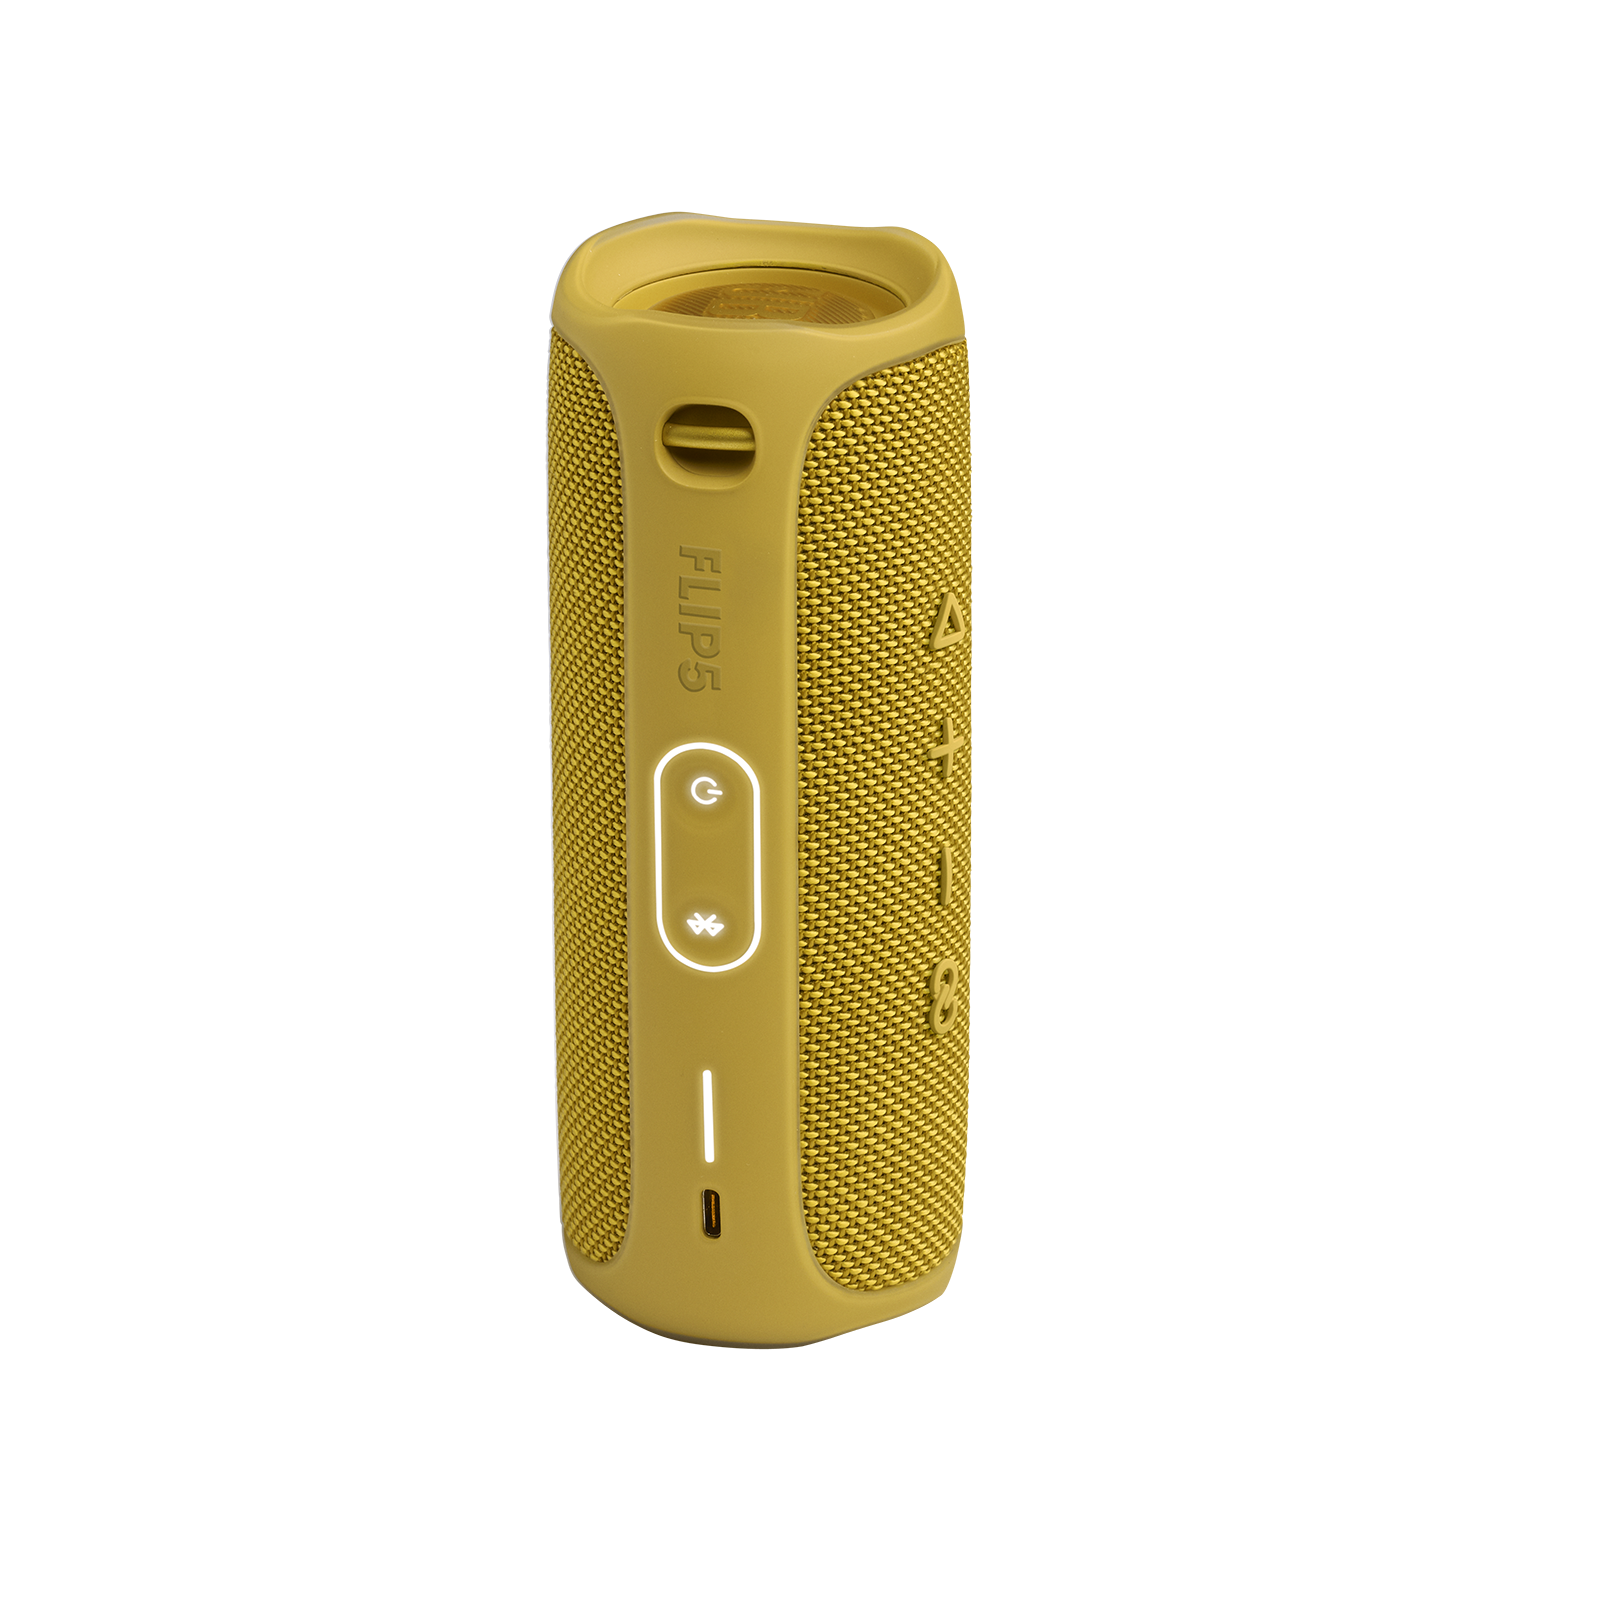 JBL Flip 5 - Mustard Yellow - Portable Waterproof Speaker - Back